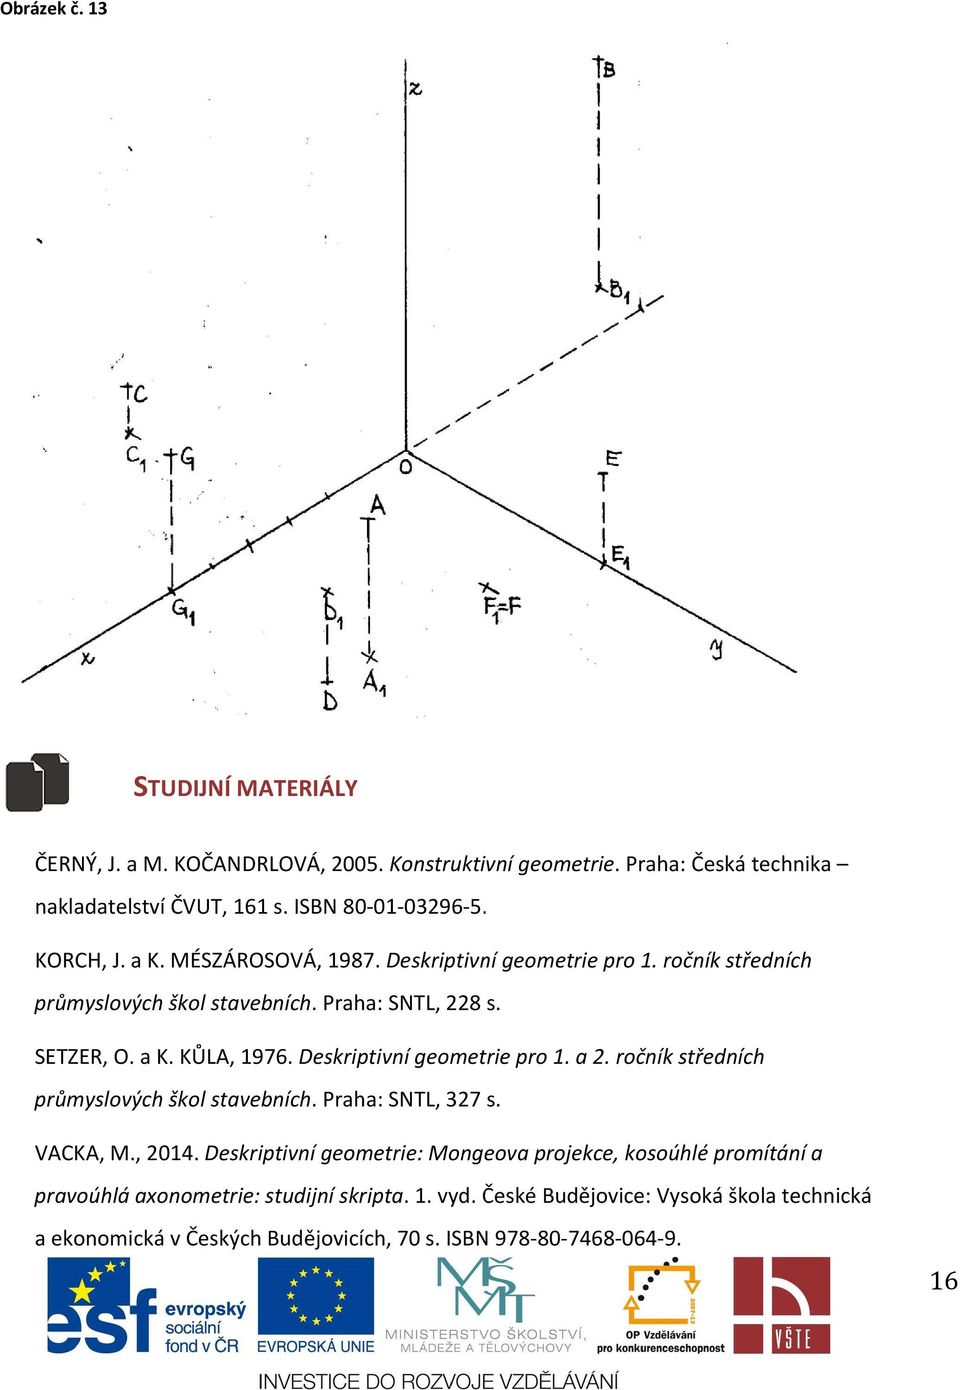 Deskriptivní geometrie pro 1. a 2. ročník středních průmyslových škol stavebních. Praha: SNTL, 327 s. VACKA, M., 2014.